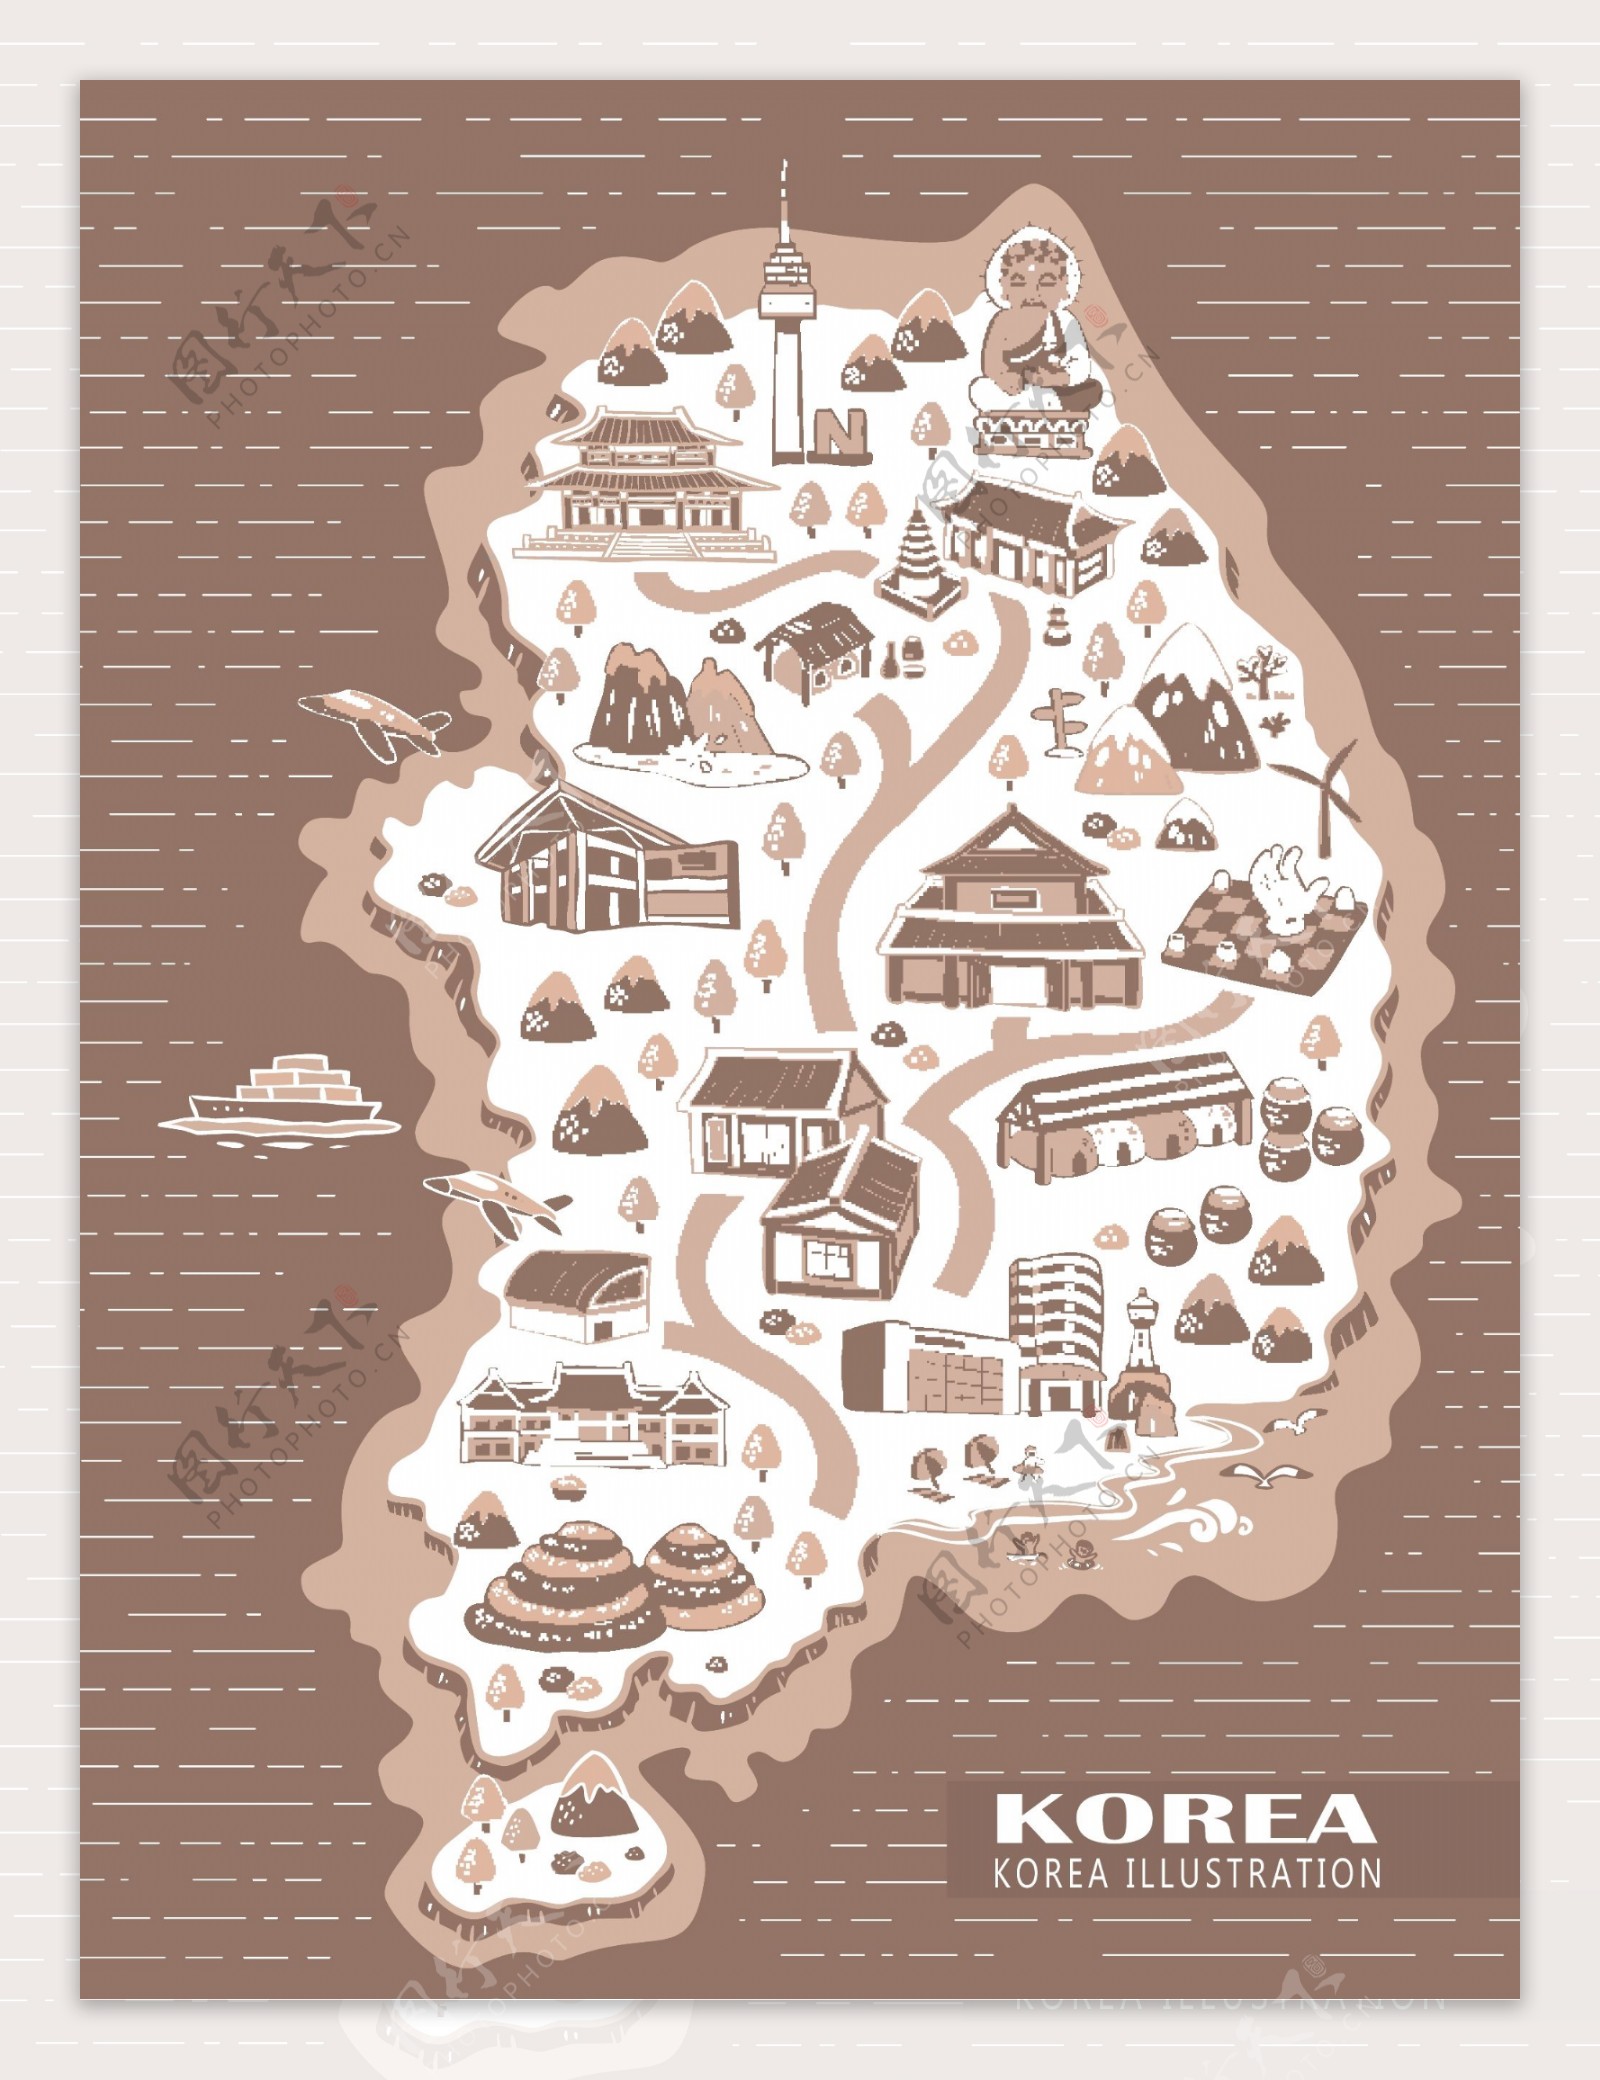 复古韩国地标地图矢量素材